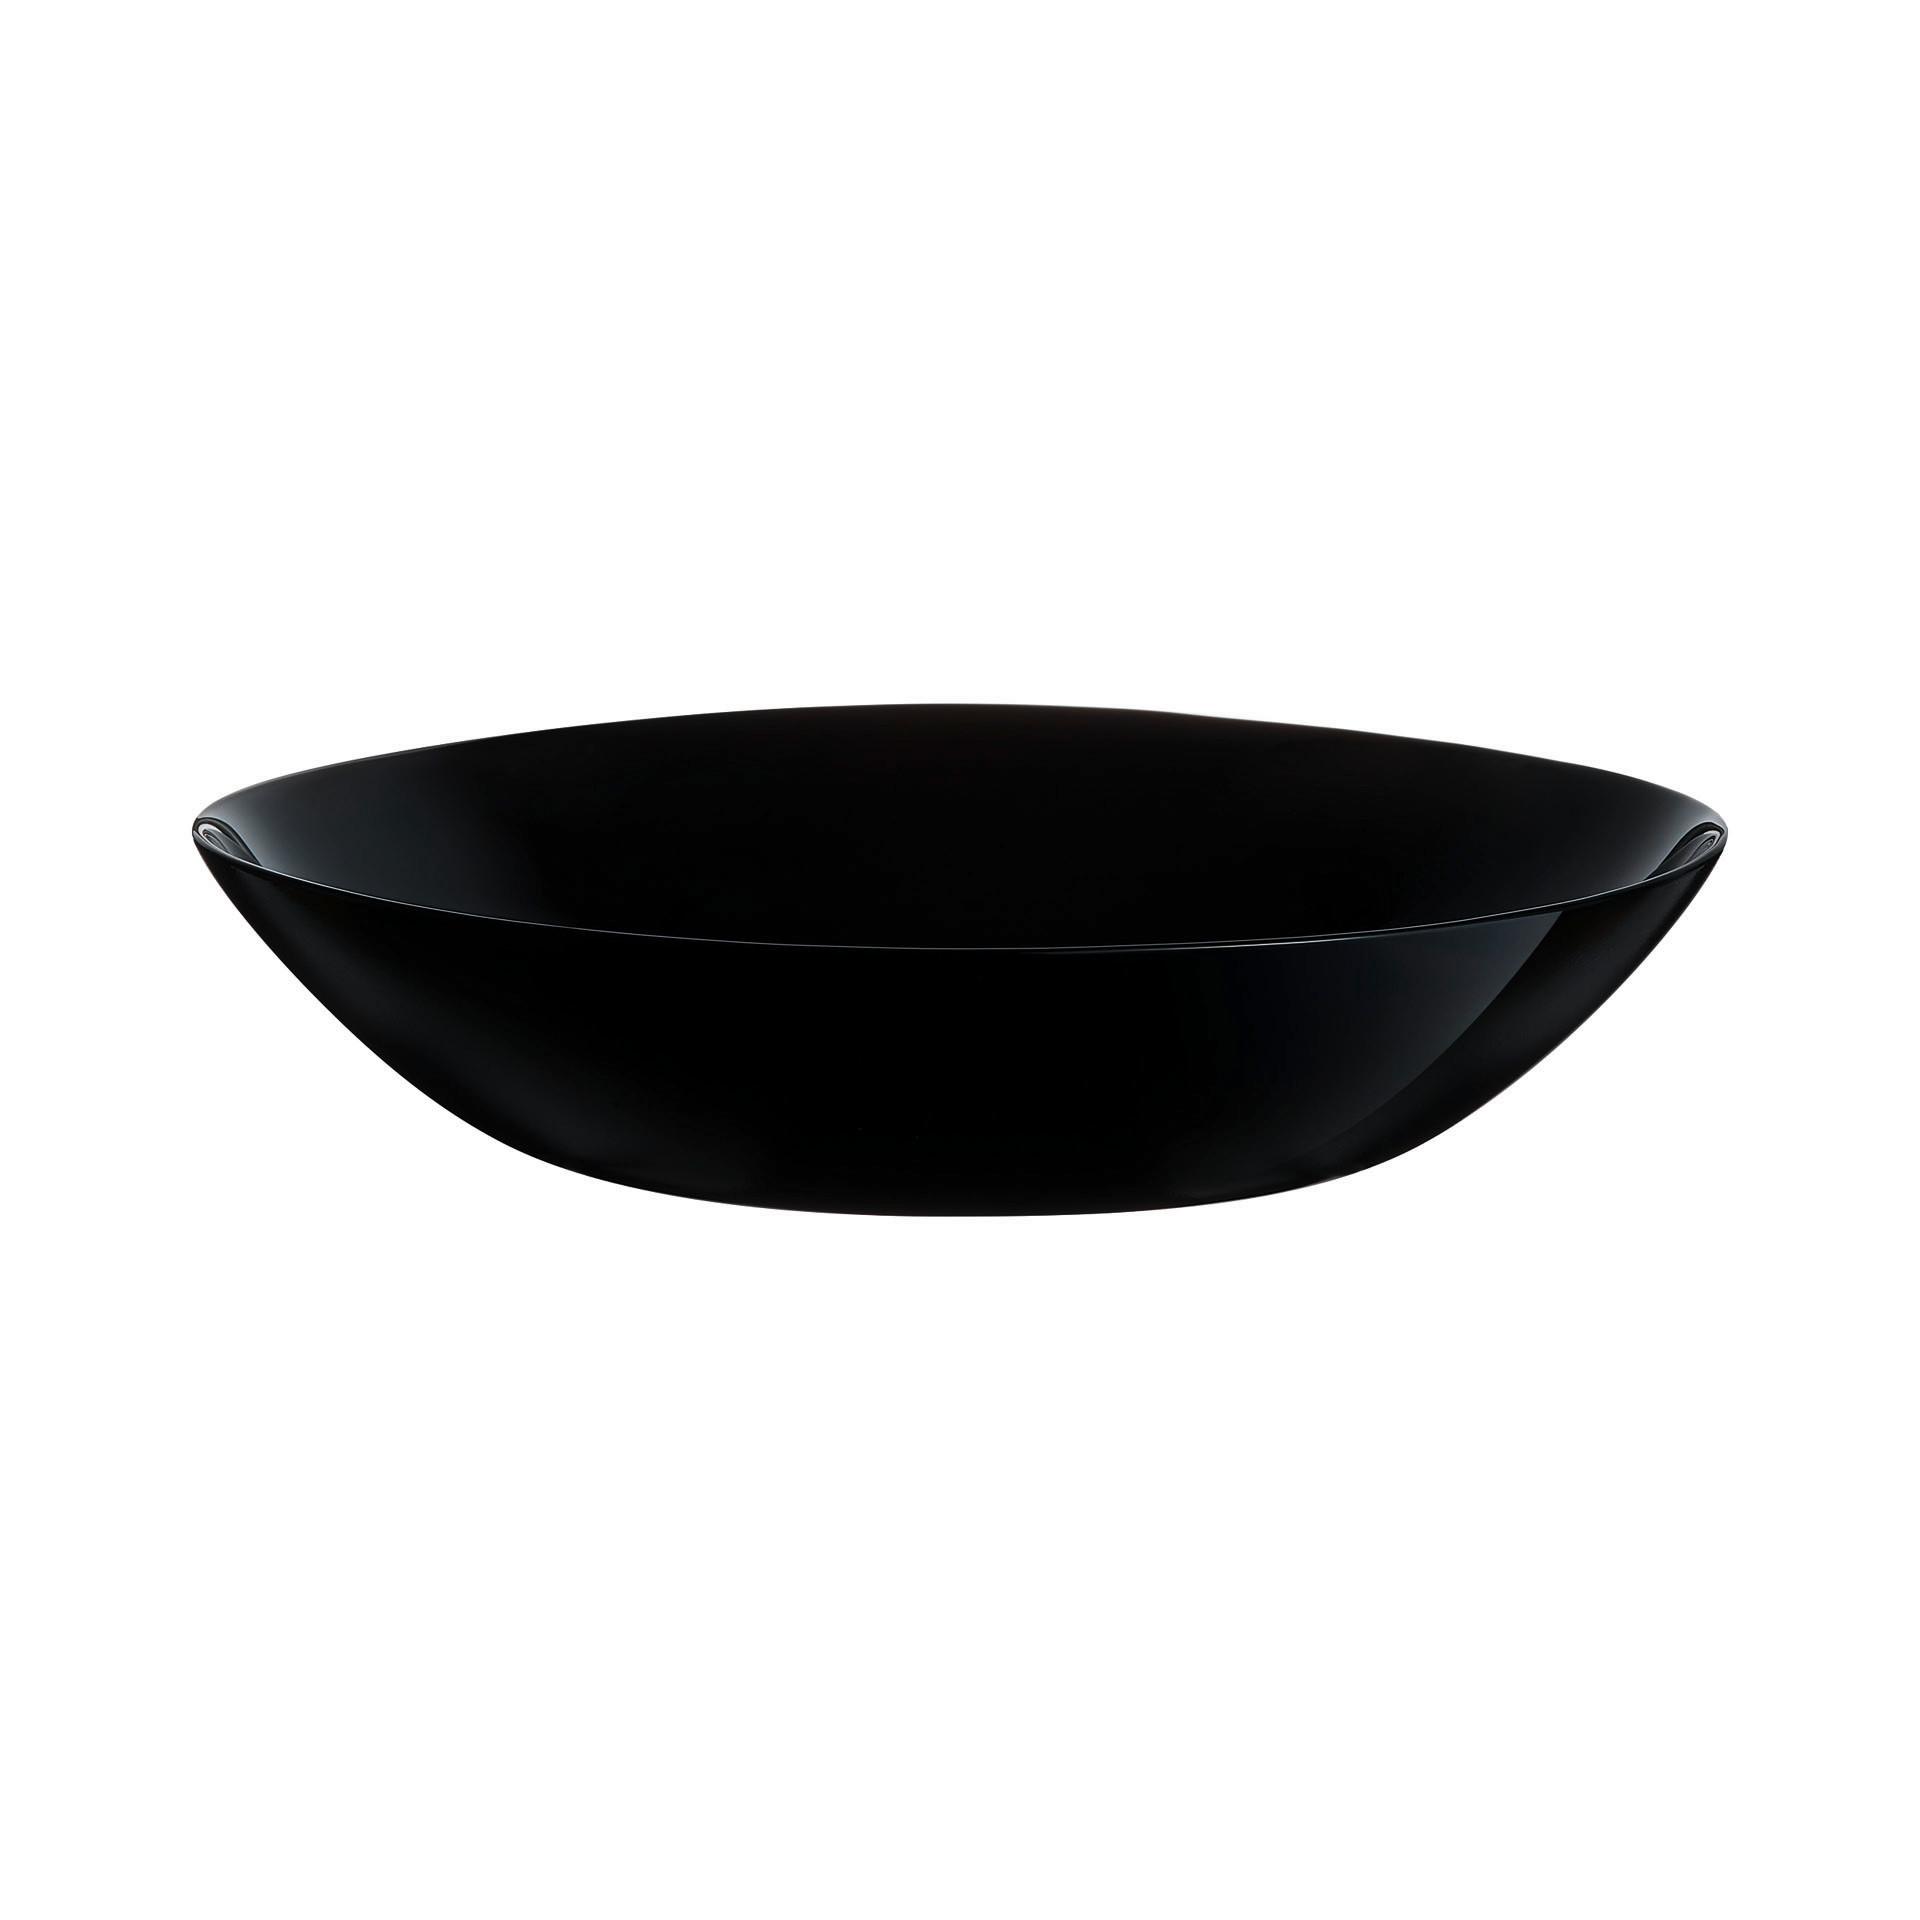 Hluboký Talíř Brigitte Black - černá, Konvenční, sklo (20/4,2cm) - Based